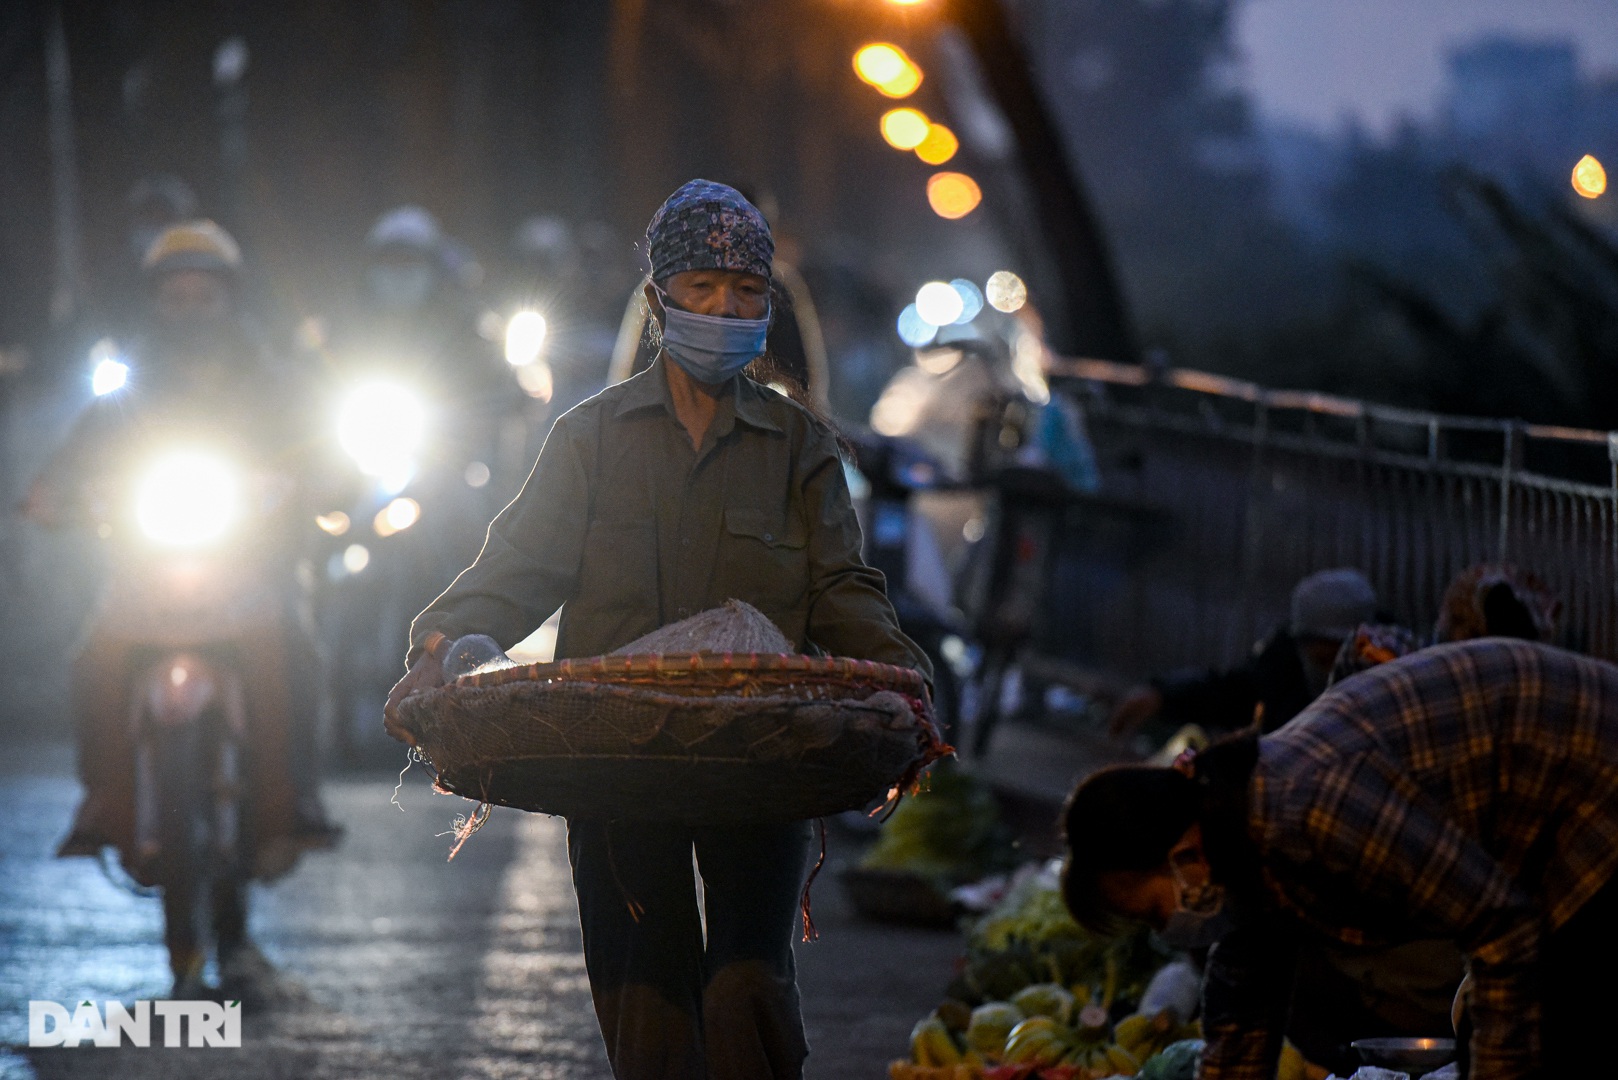 Cảnh họp chợ lộn xộn, giao thông ùn ứ trên cây cầu trăm tuổi ở Hà Nội - 3